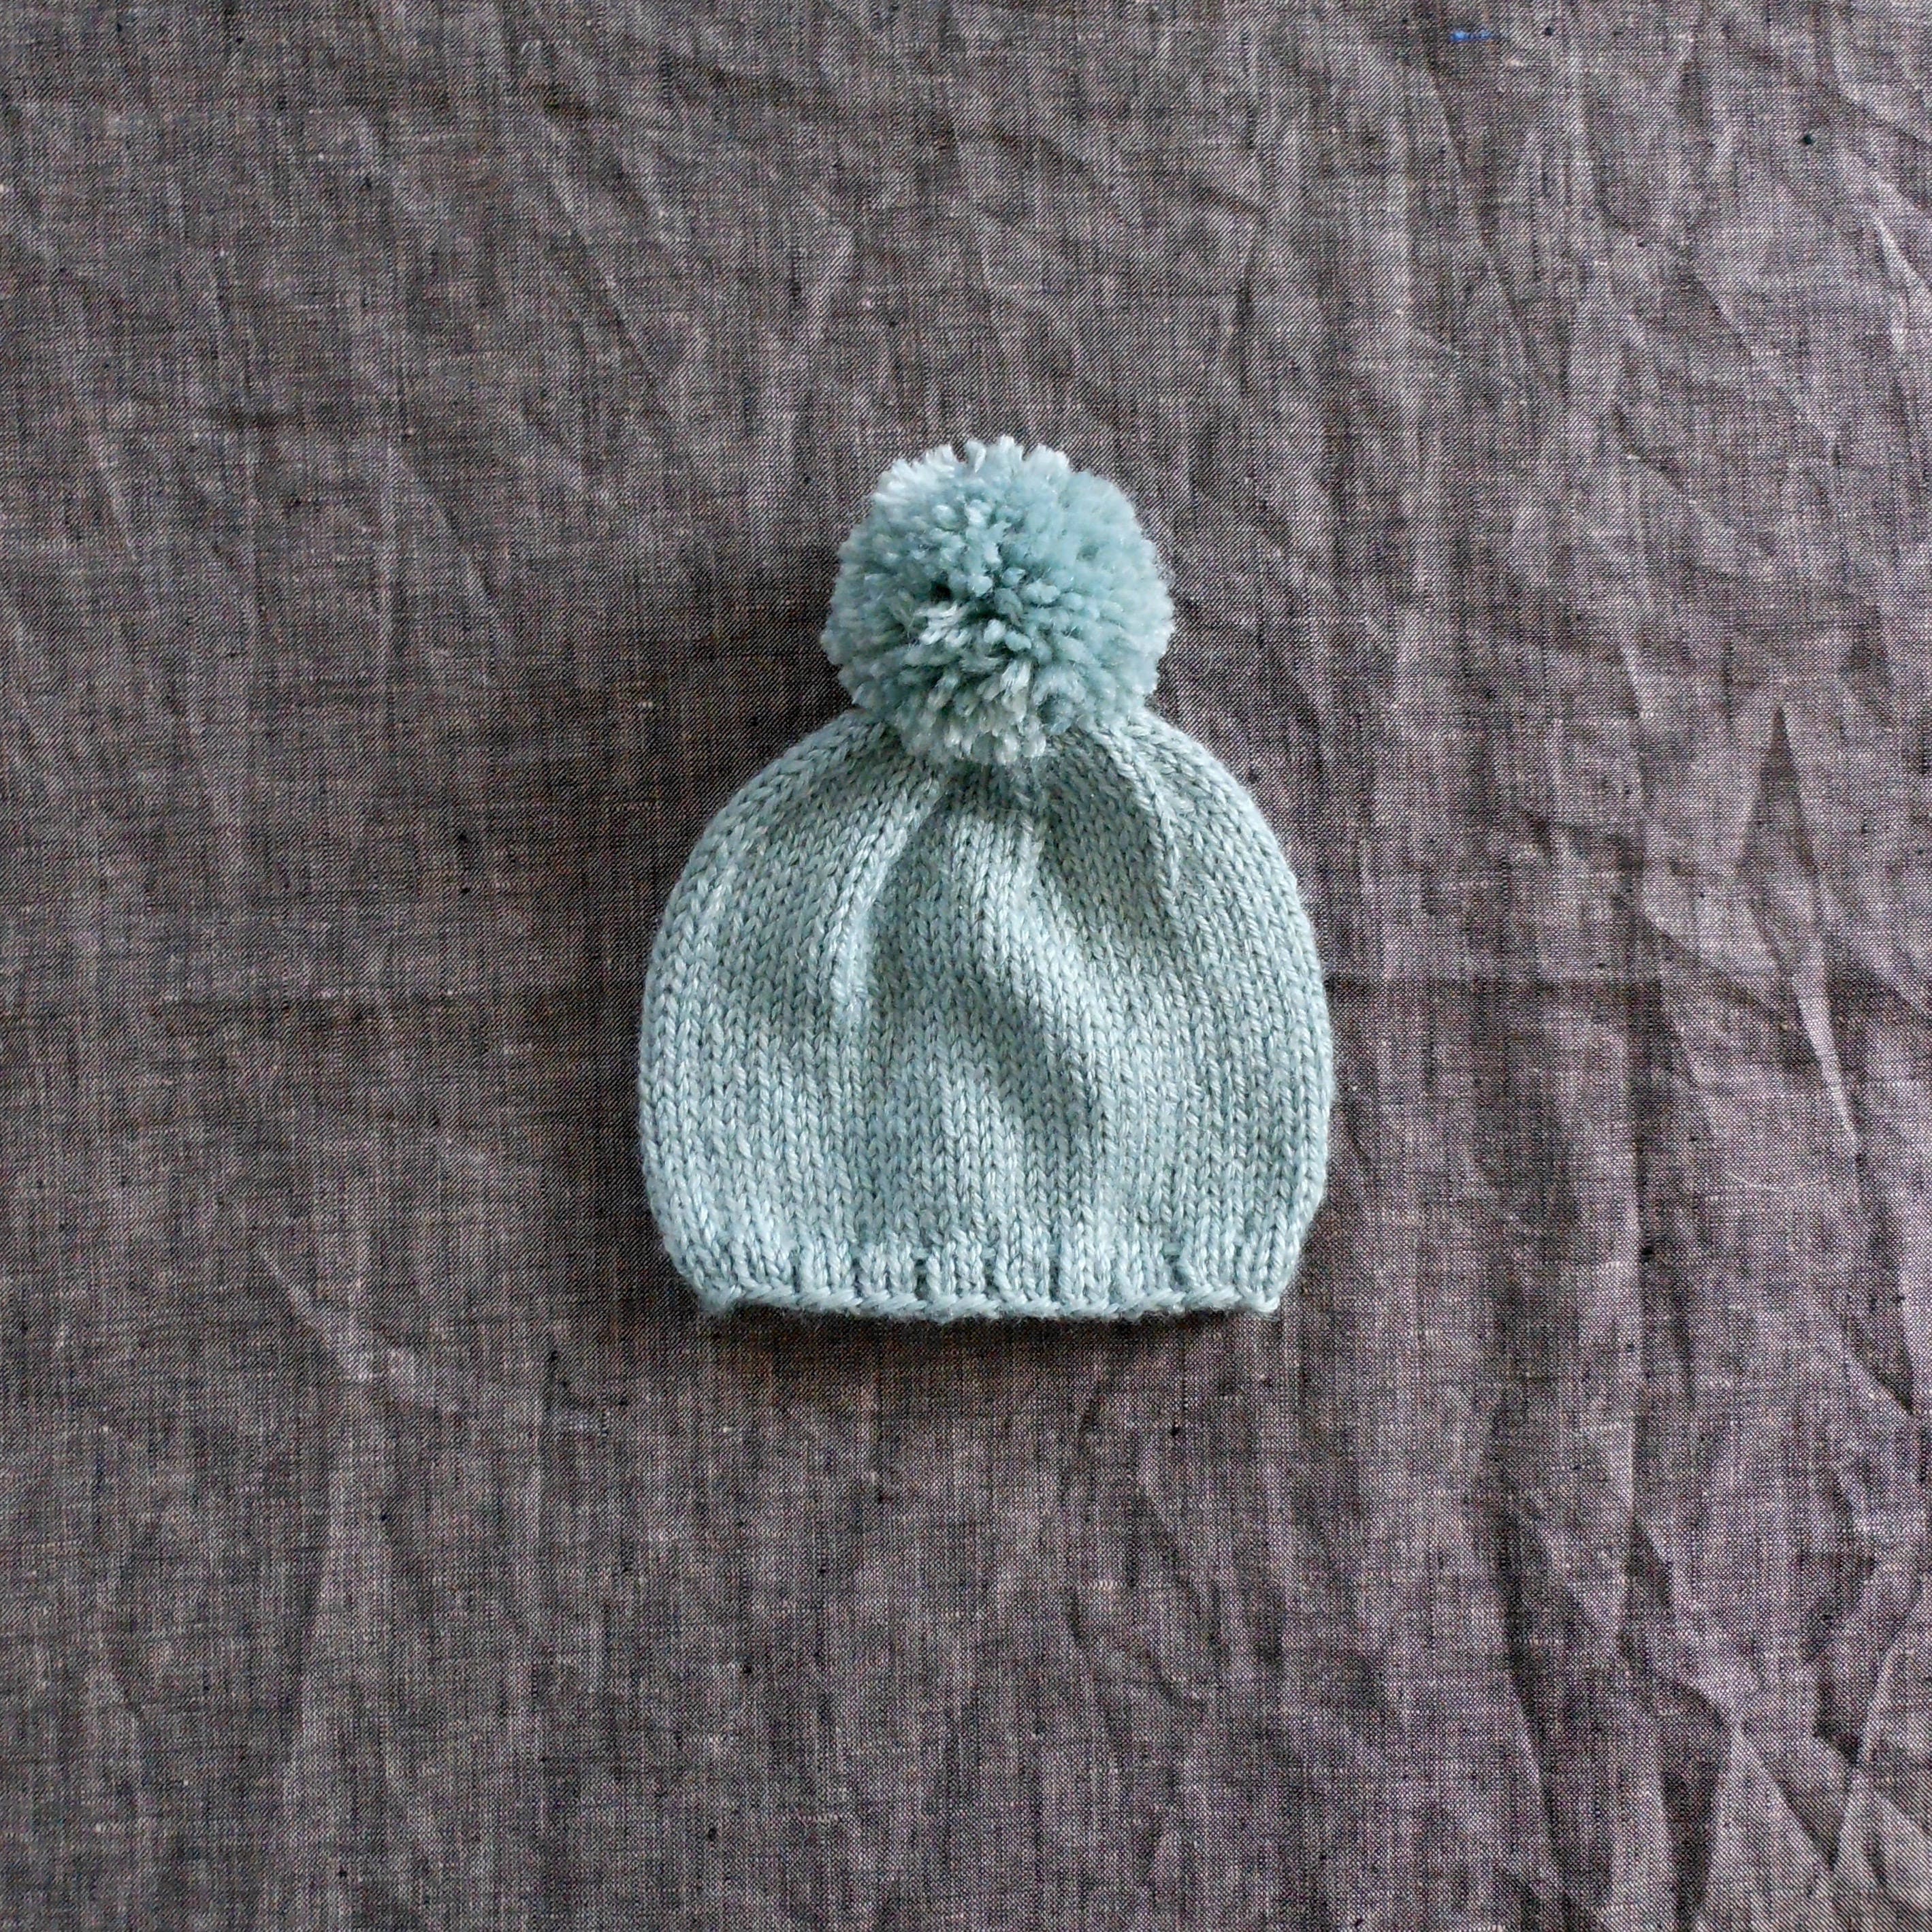 Seafoam Blue Knitted Beanie - Warm Wool Winter Hat